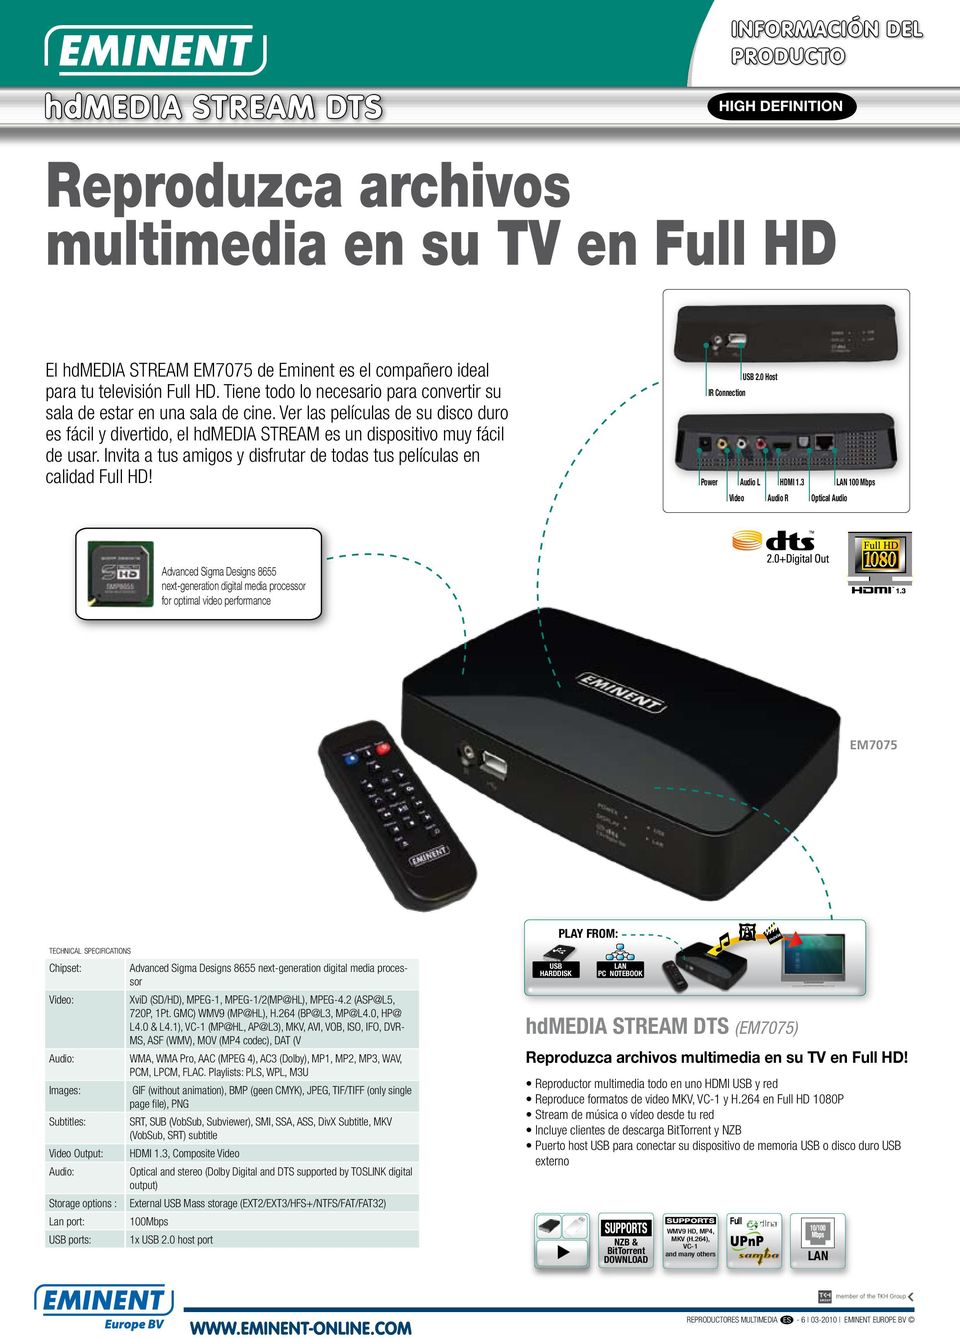 Invita a tus amigos y disfrutar de todas tus películas en calidad Full HD! USB 2.0 Host IR Connection Power Audio L Video HDMI 1.